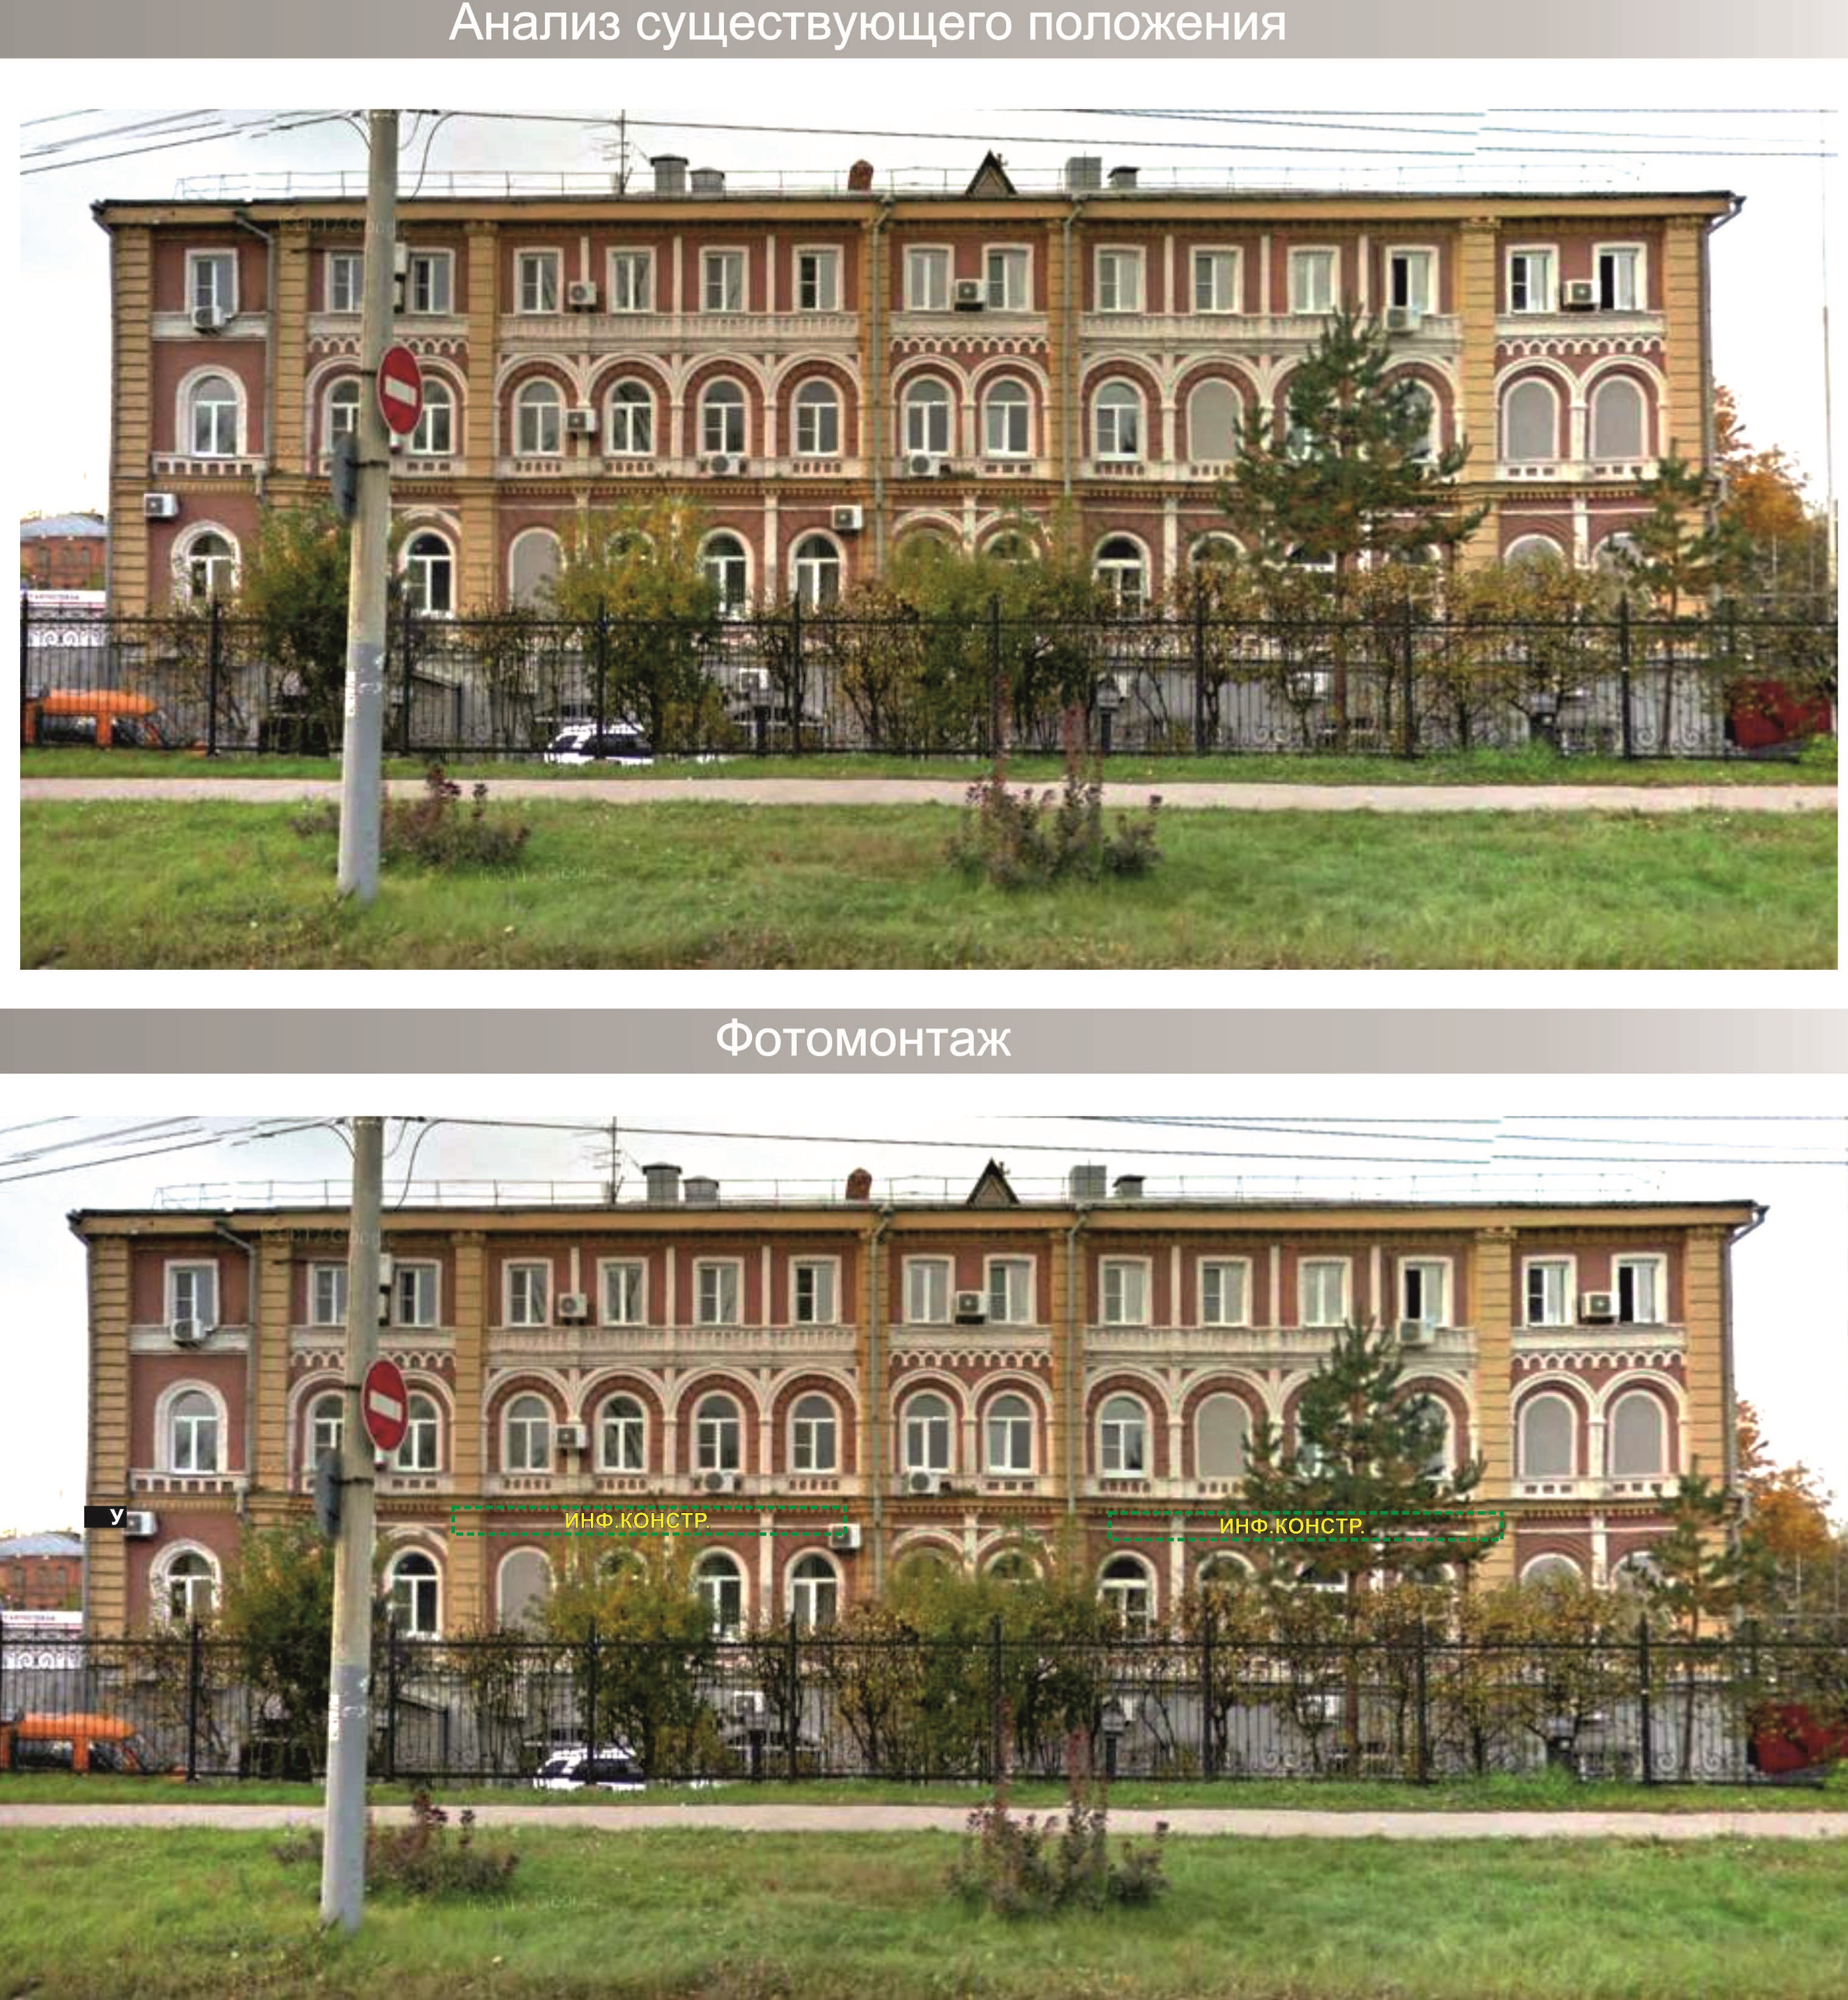 Утверждена архитектурно-художественная концепция улиц в районе стадиона &laquo;Нижний Новгород&raquo; - фото 5